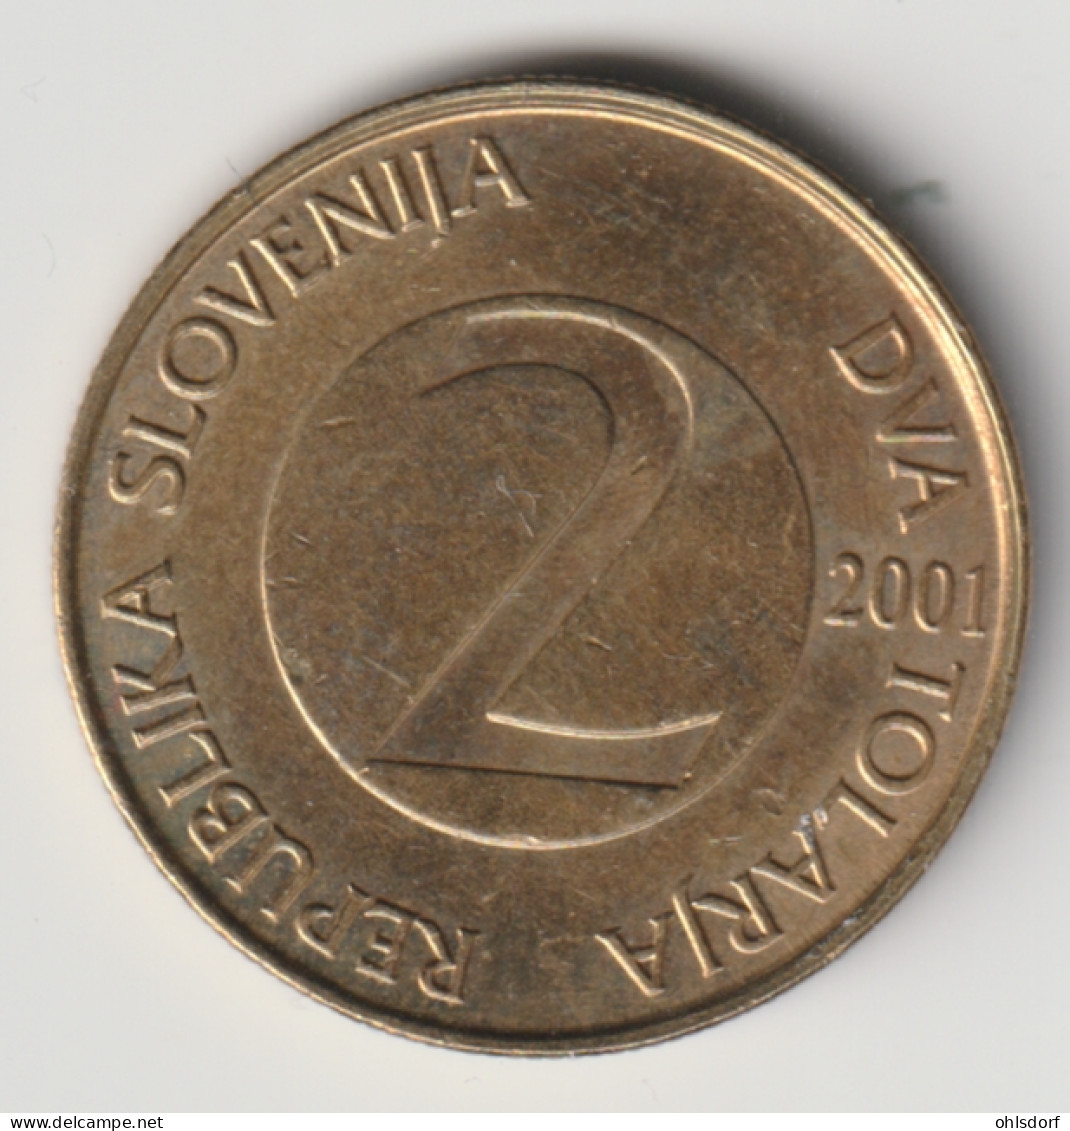 SLOVENIA 2001: 1 Tolar, KM 5 - Slovénie